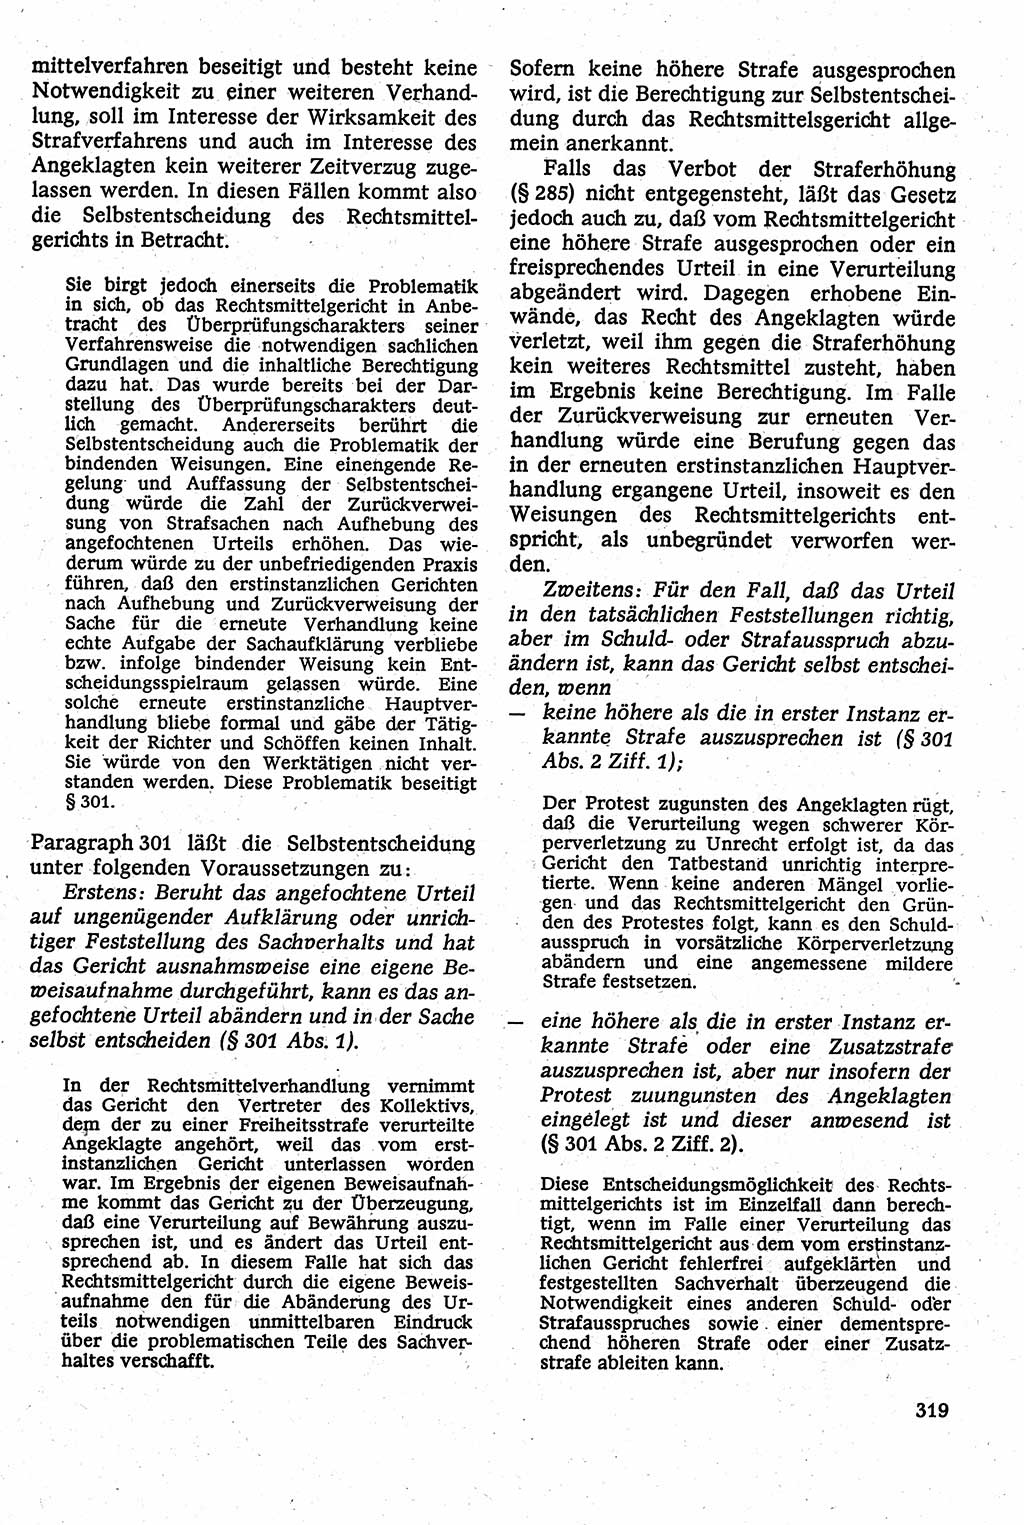 Strafverfahrensrecht [Deutsche Demokratische Republik (DDR)], Lehrbuch 1982, Seite 319 (Strafverf.-R. DDR Lb. 1982, S. 319)